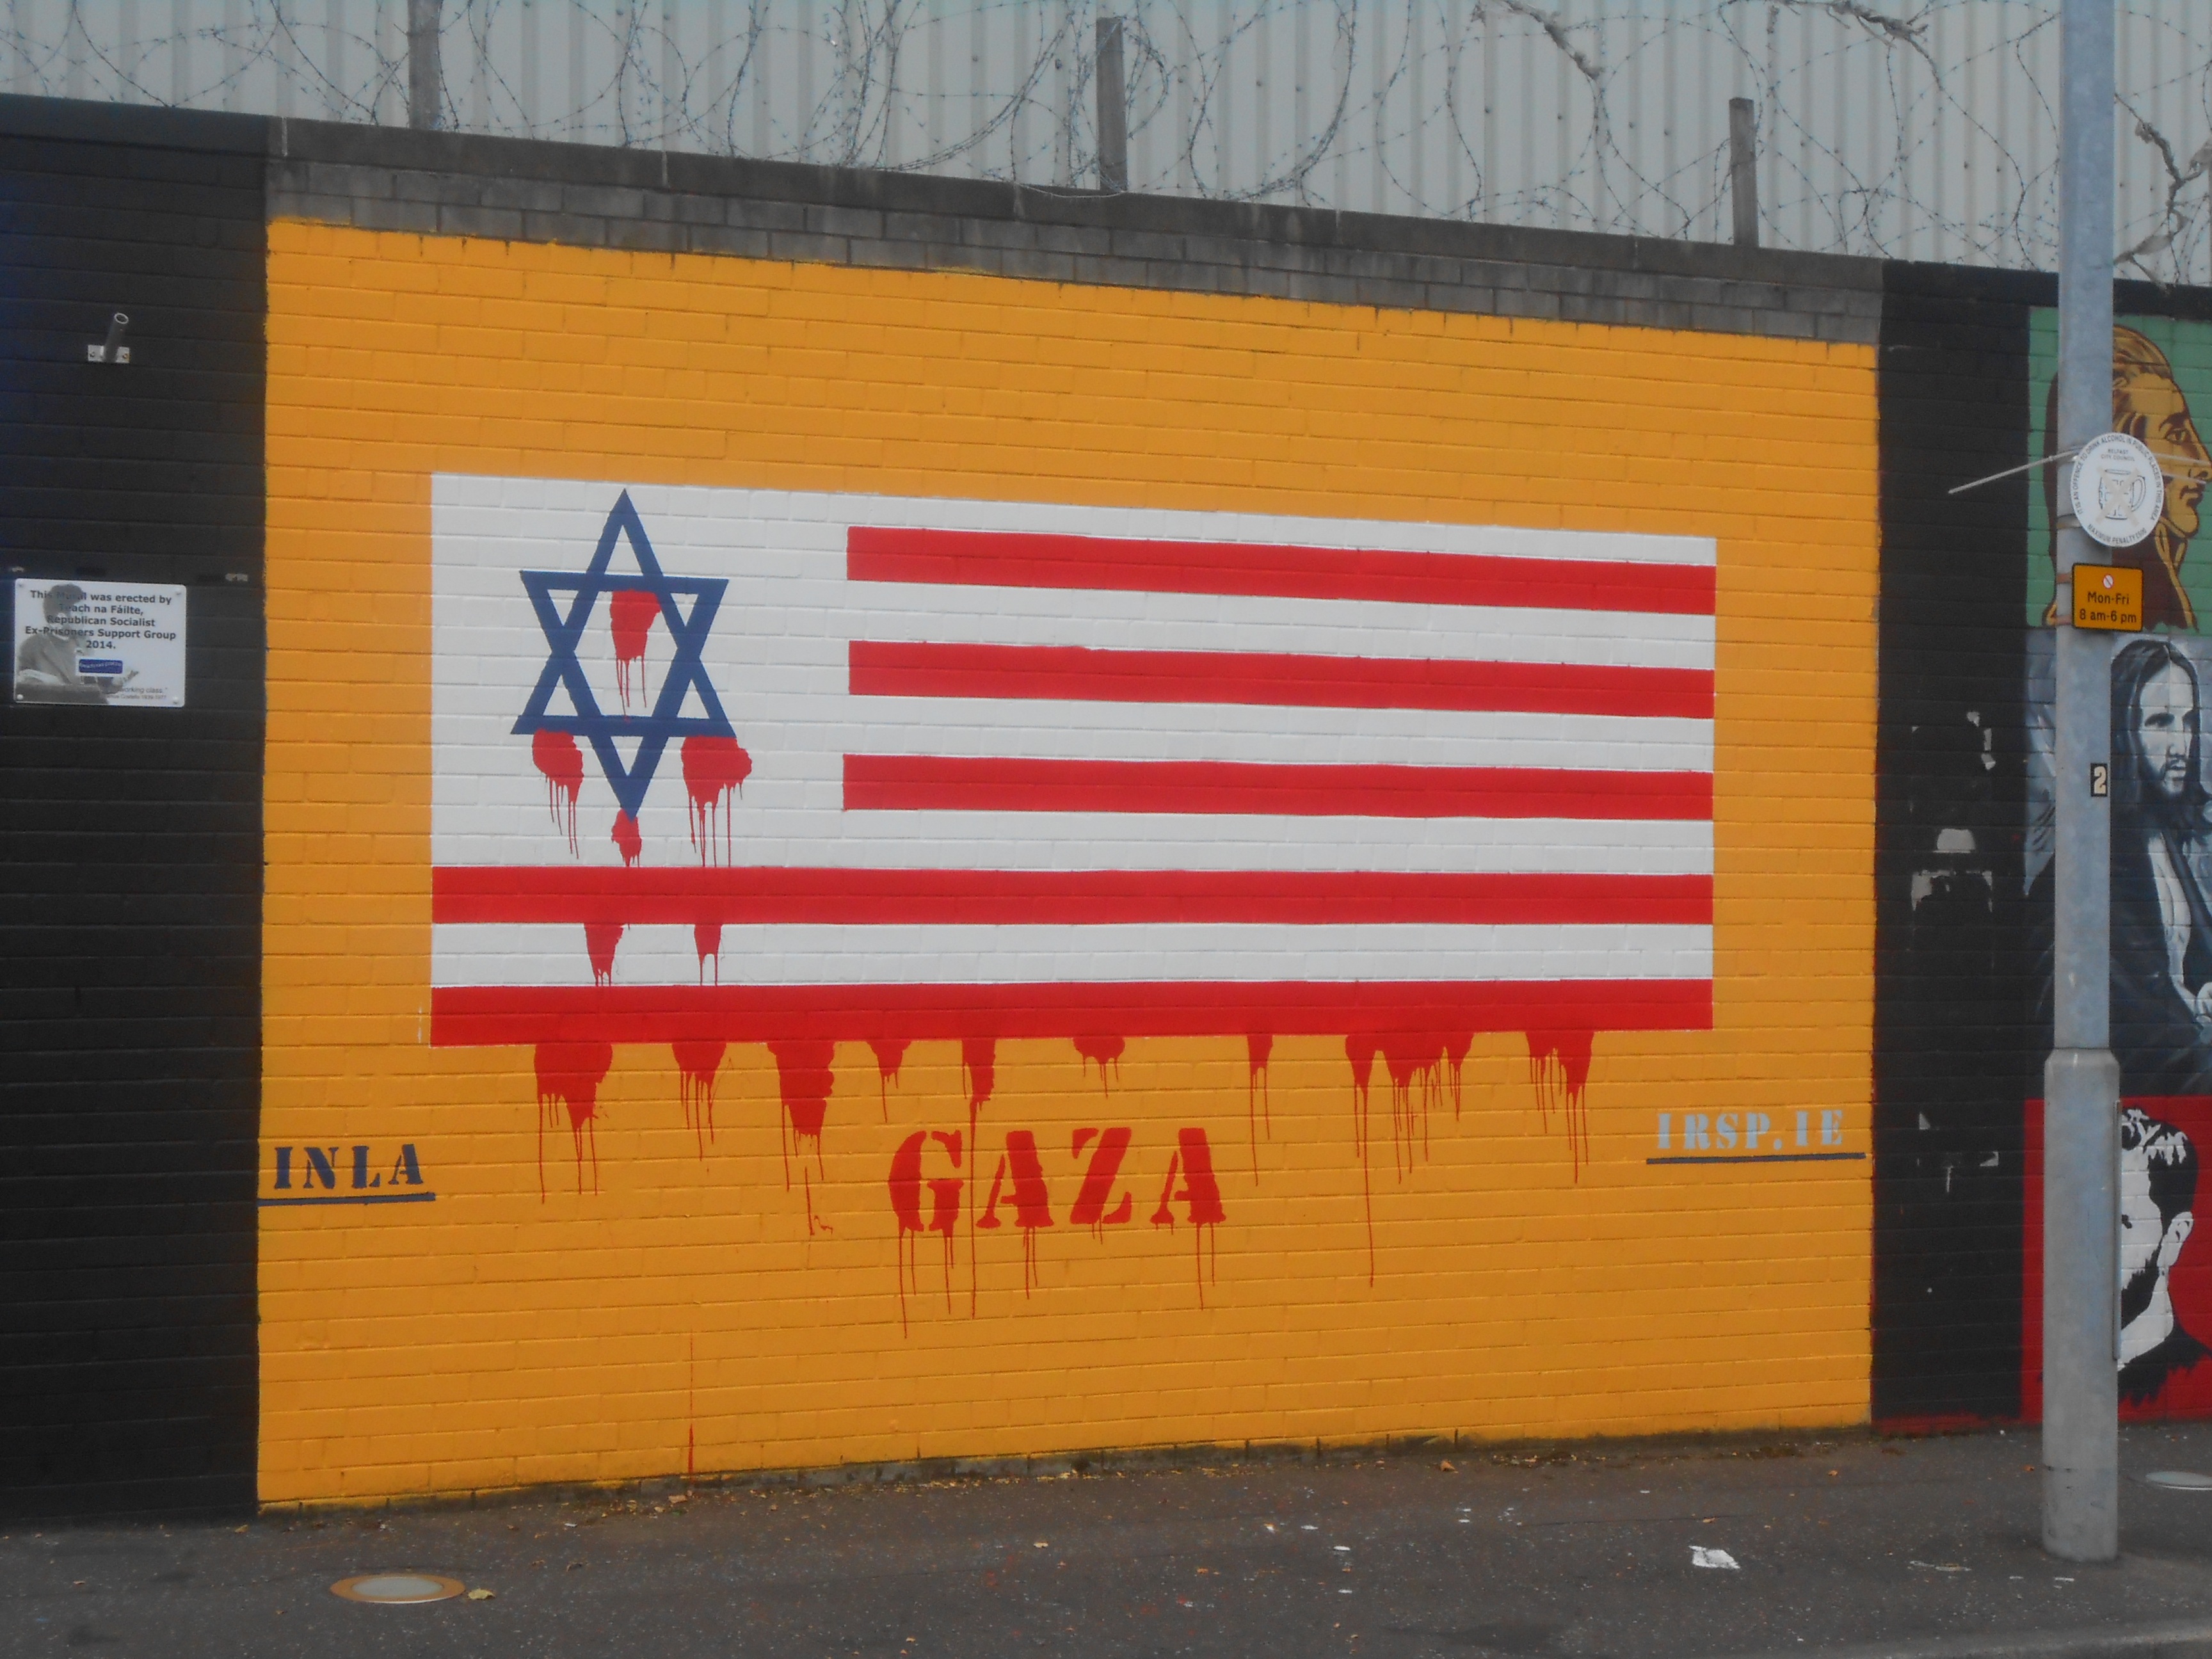 IRSP Gaza mural